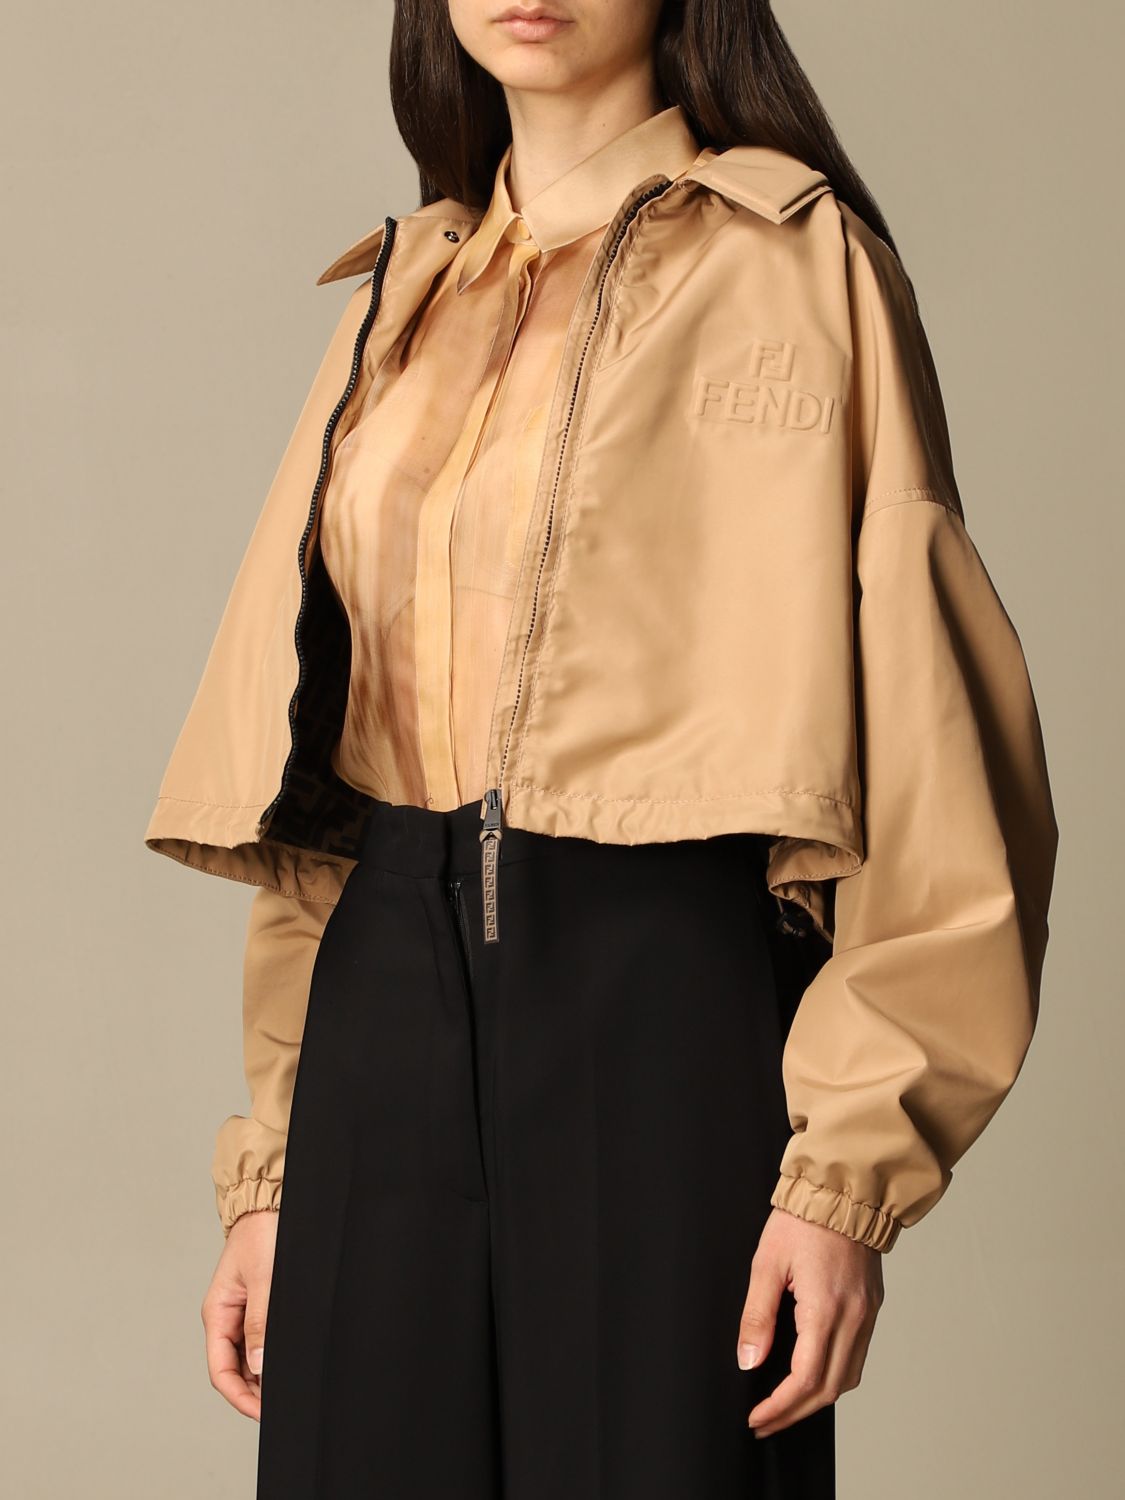 FENDI: cropped jacket with logo - Beige | Jacket Fendi FAN025 AERX